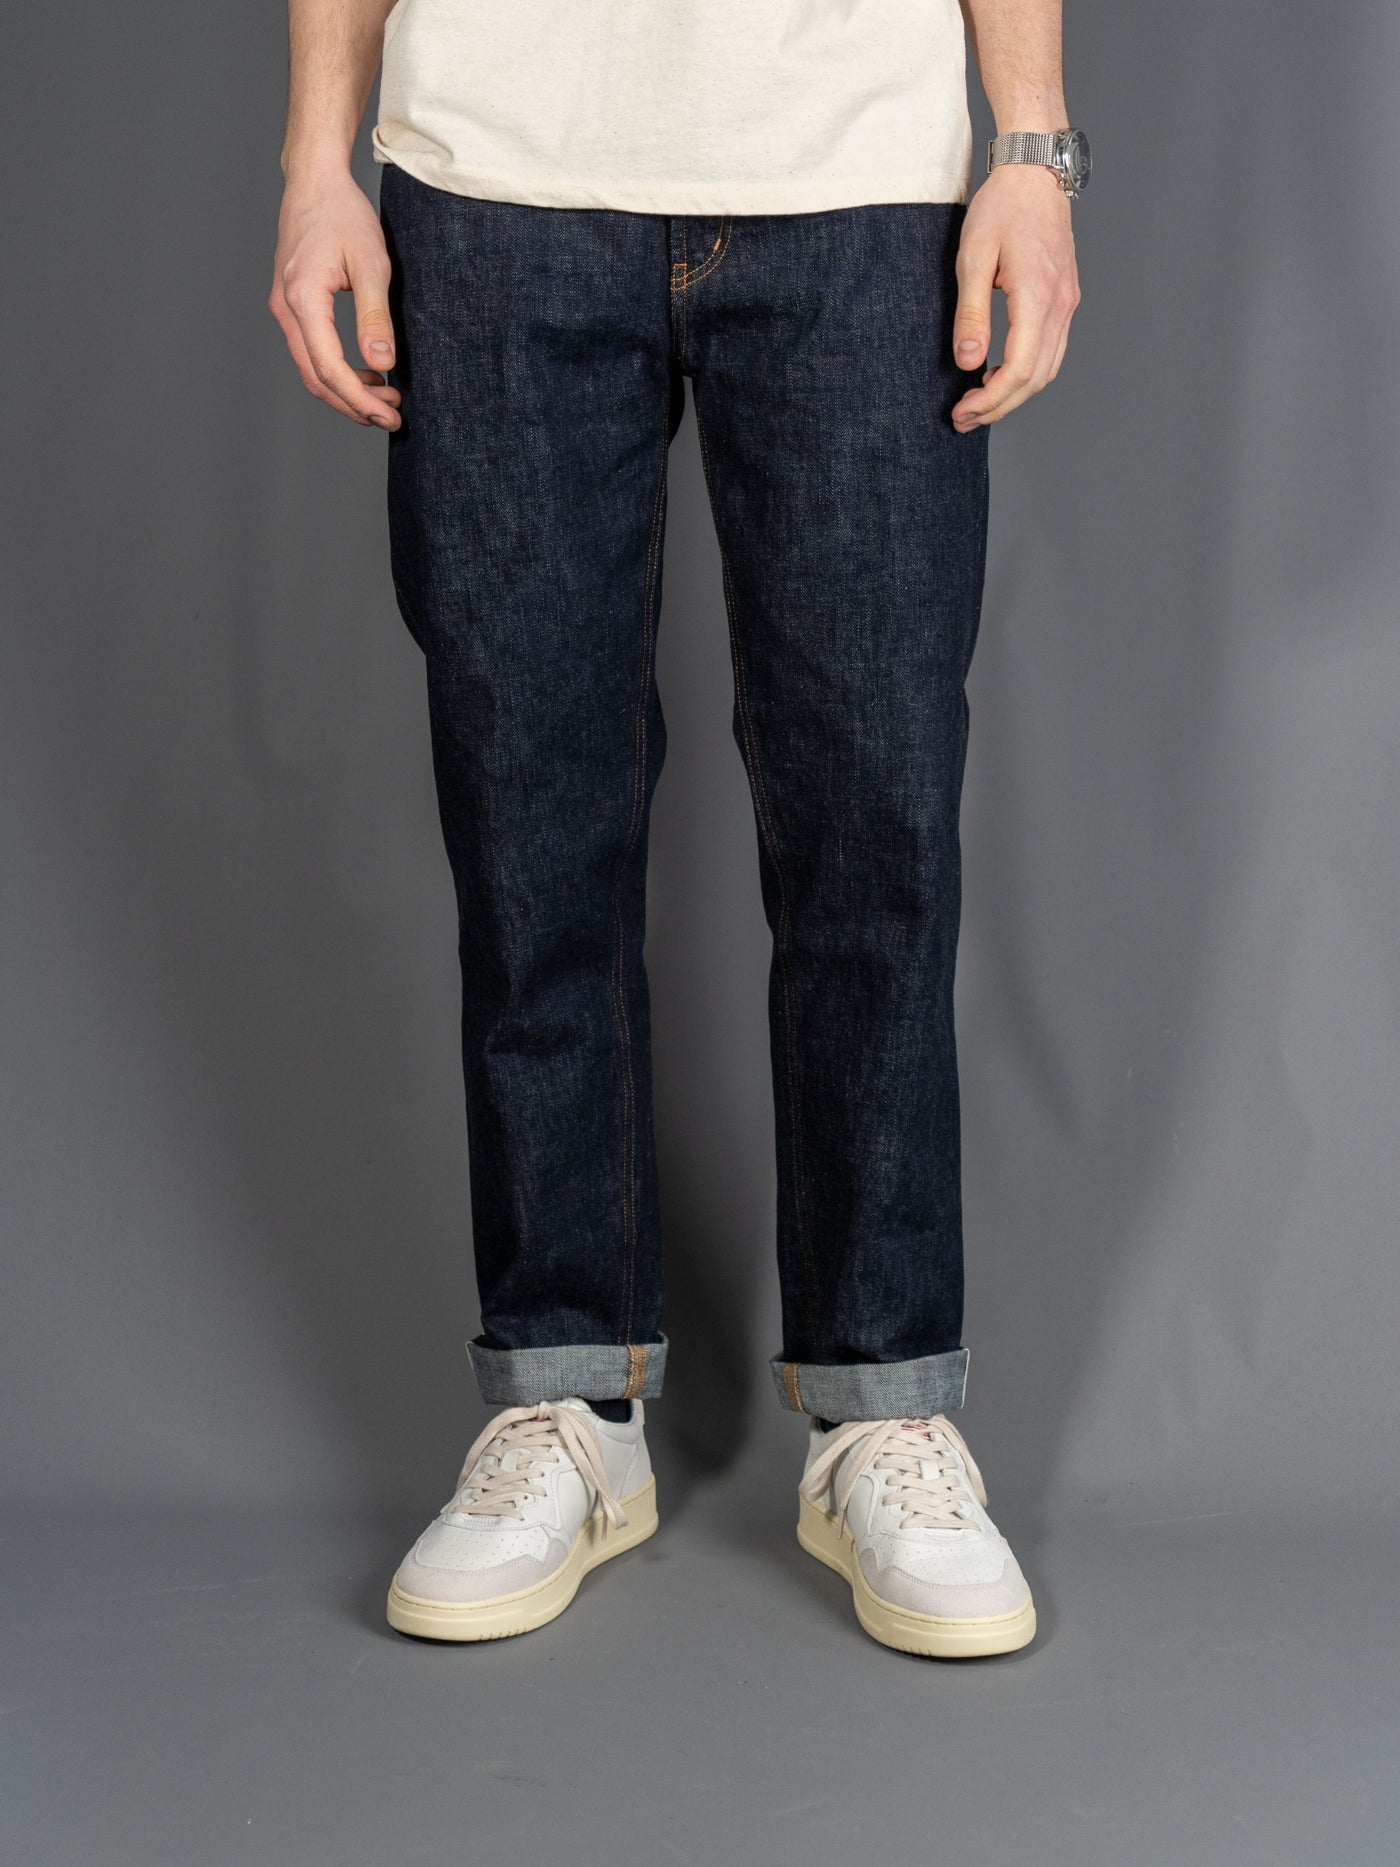 Ervin Loose Fit Japanese Jeans - Navy